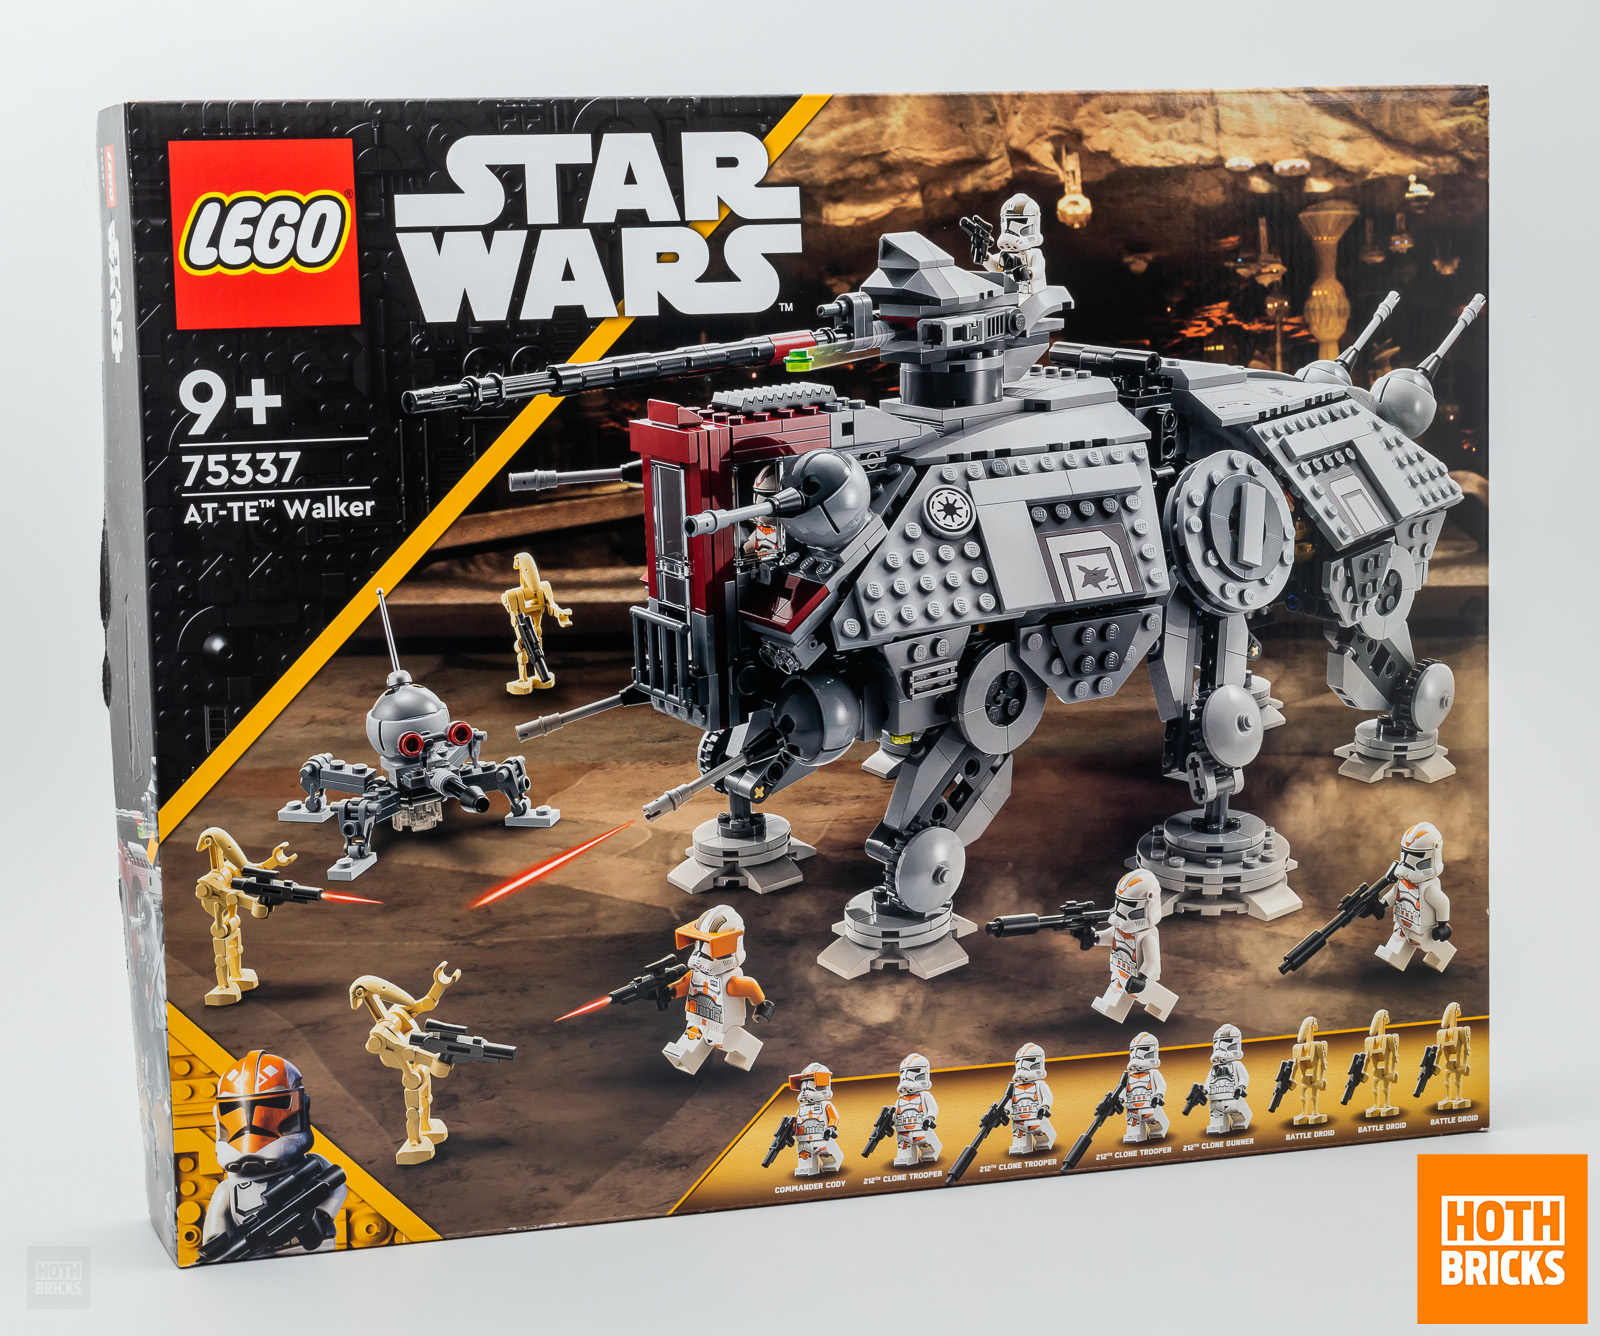 Concurs: o copie a LEGO Star Wars 75337 AT-TE Walker care urmează să fie câștigată!